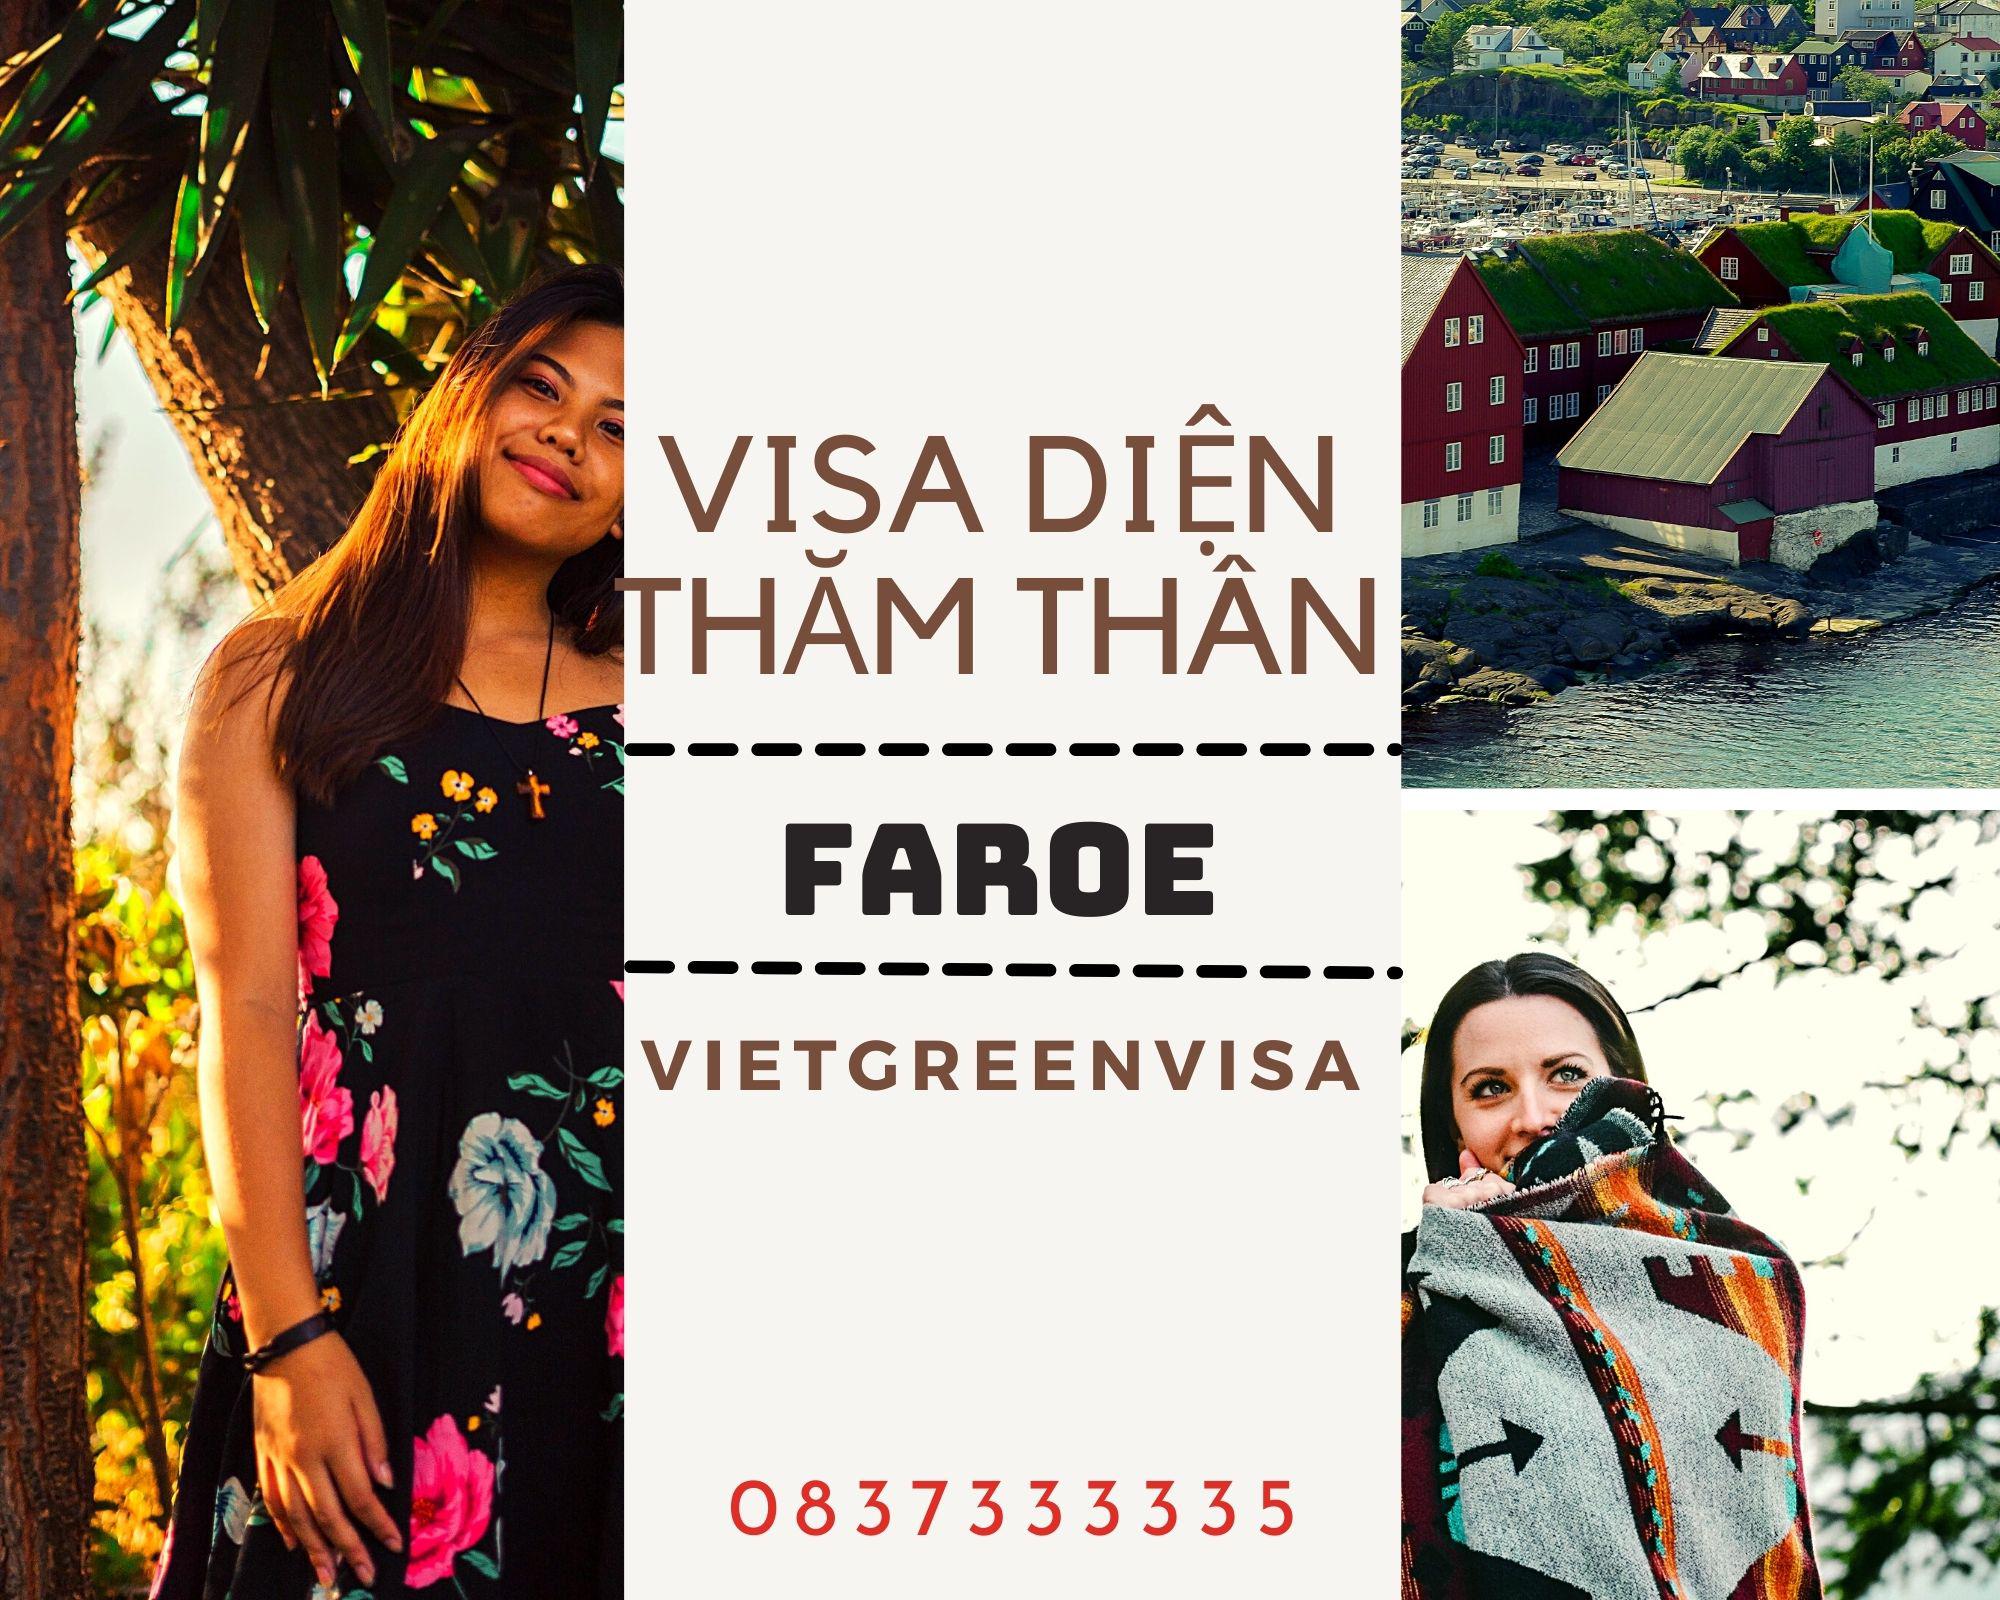 Hỗ trợ visa đi Faroe diện thăm thân trọn gói, uy tín